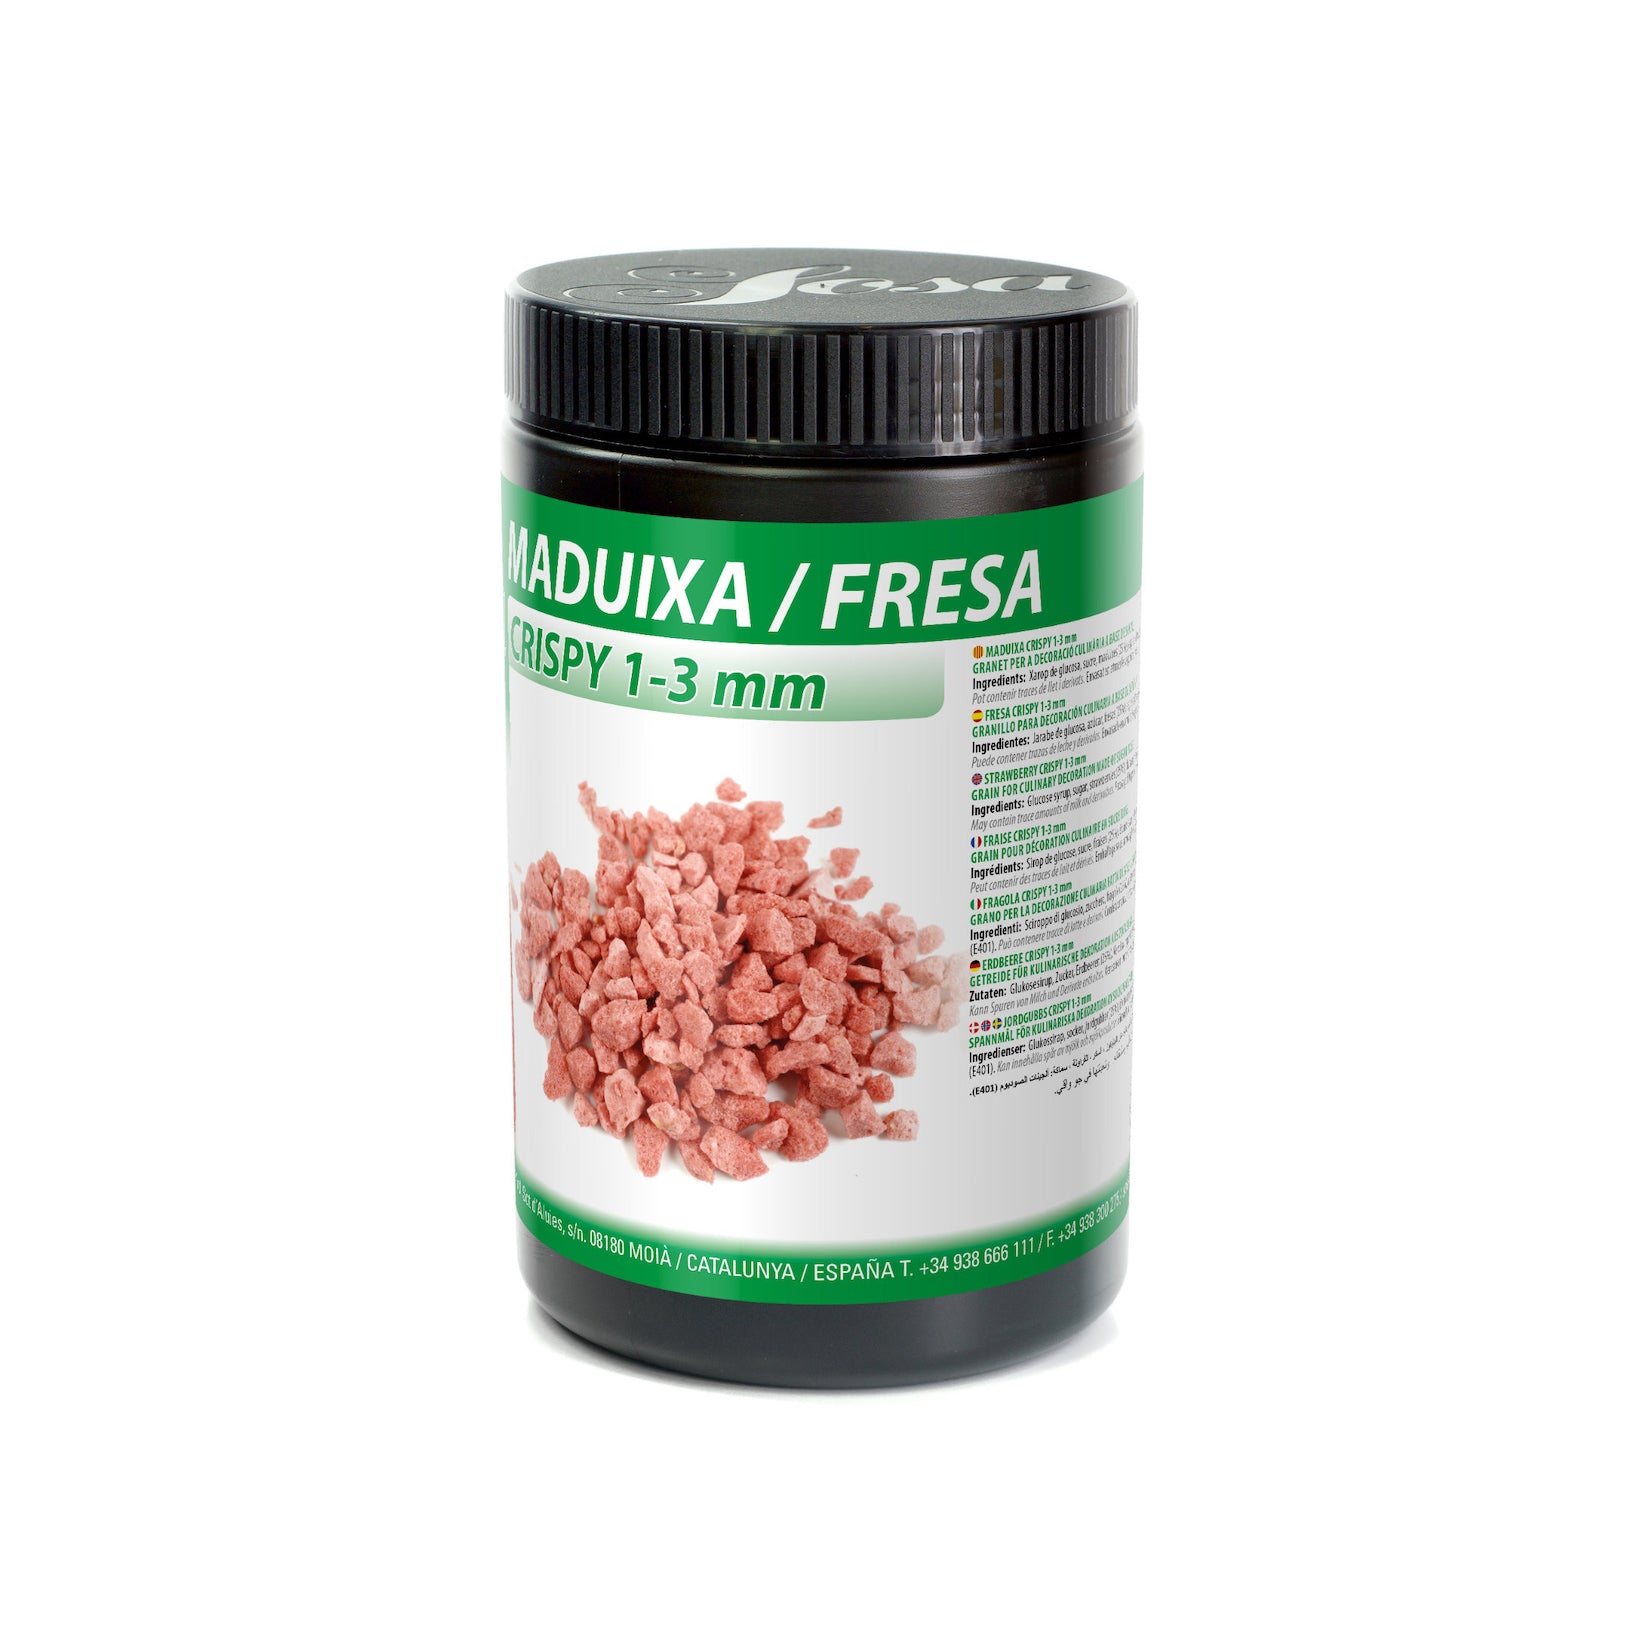 SOSA Freeze Dried Strawberry Crispy 1-3mm, 250g